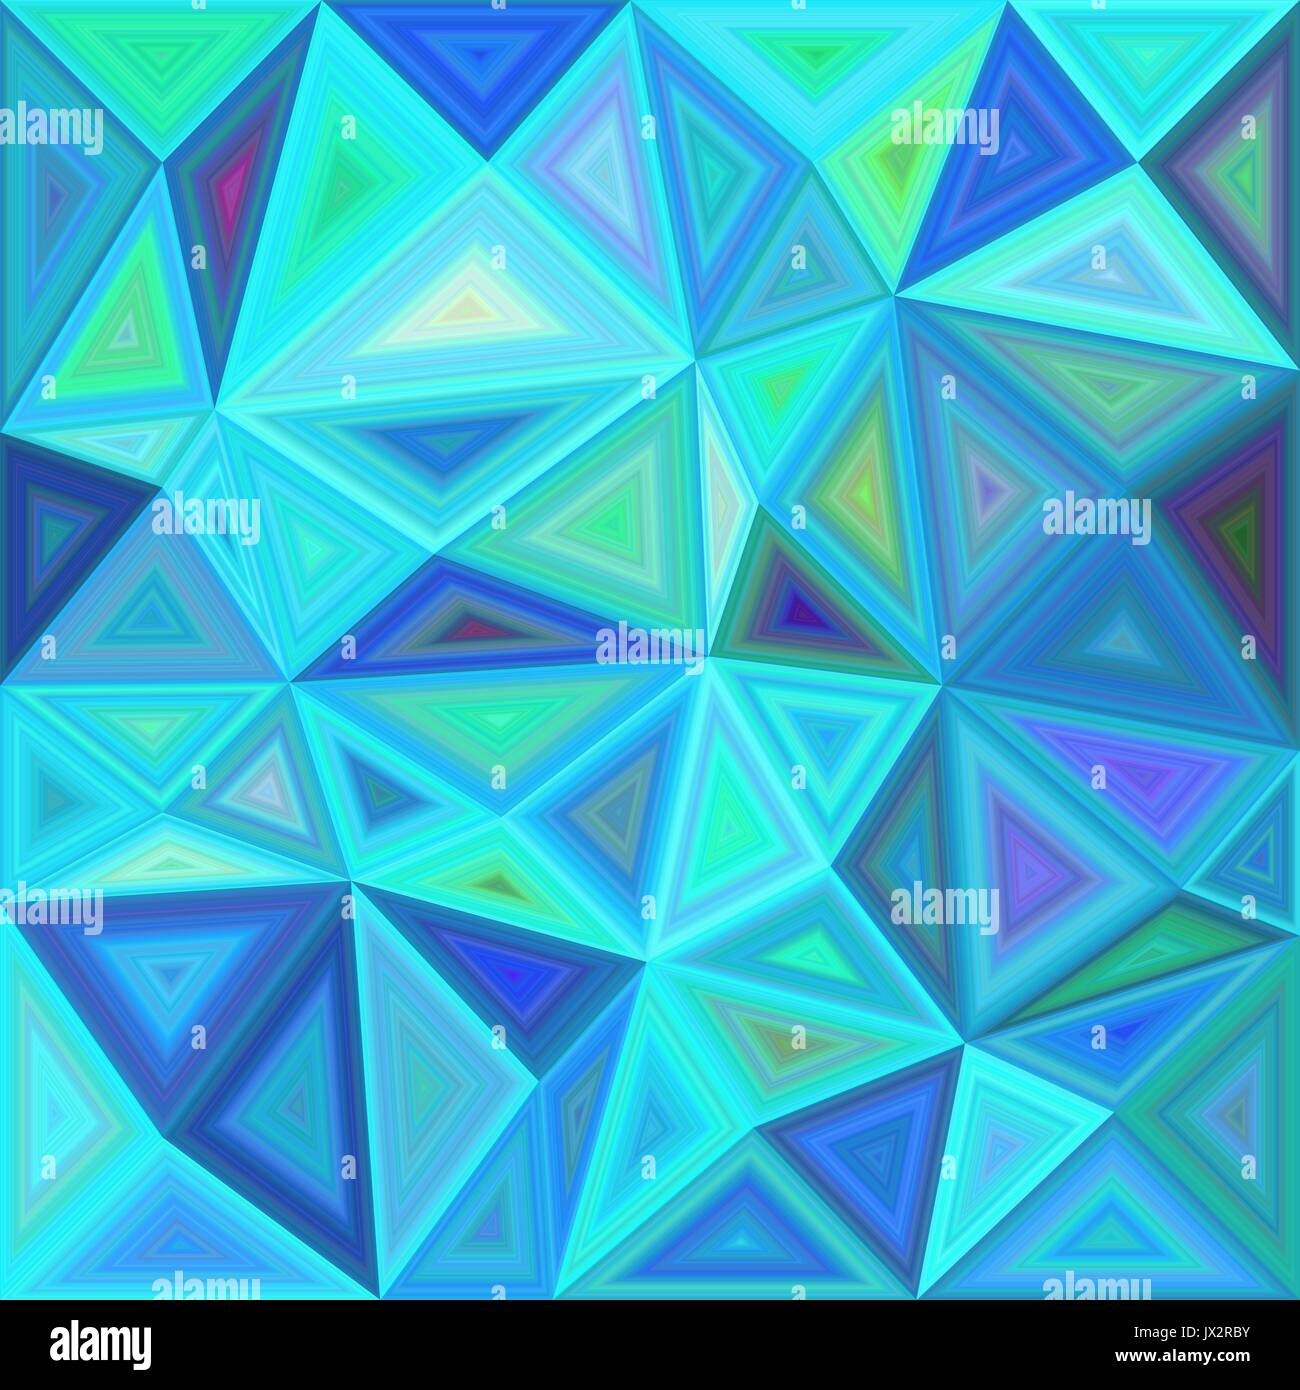 Blaues Dreieck Mosaik Fliese Hintergrund design Stock Vektor